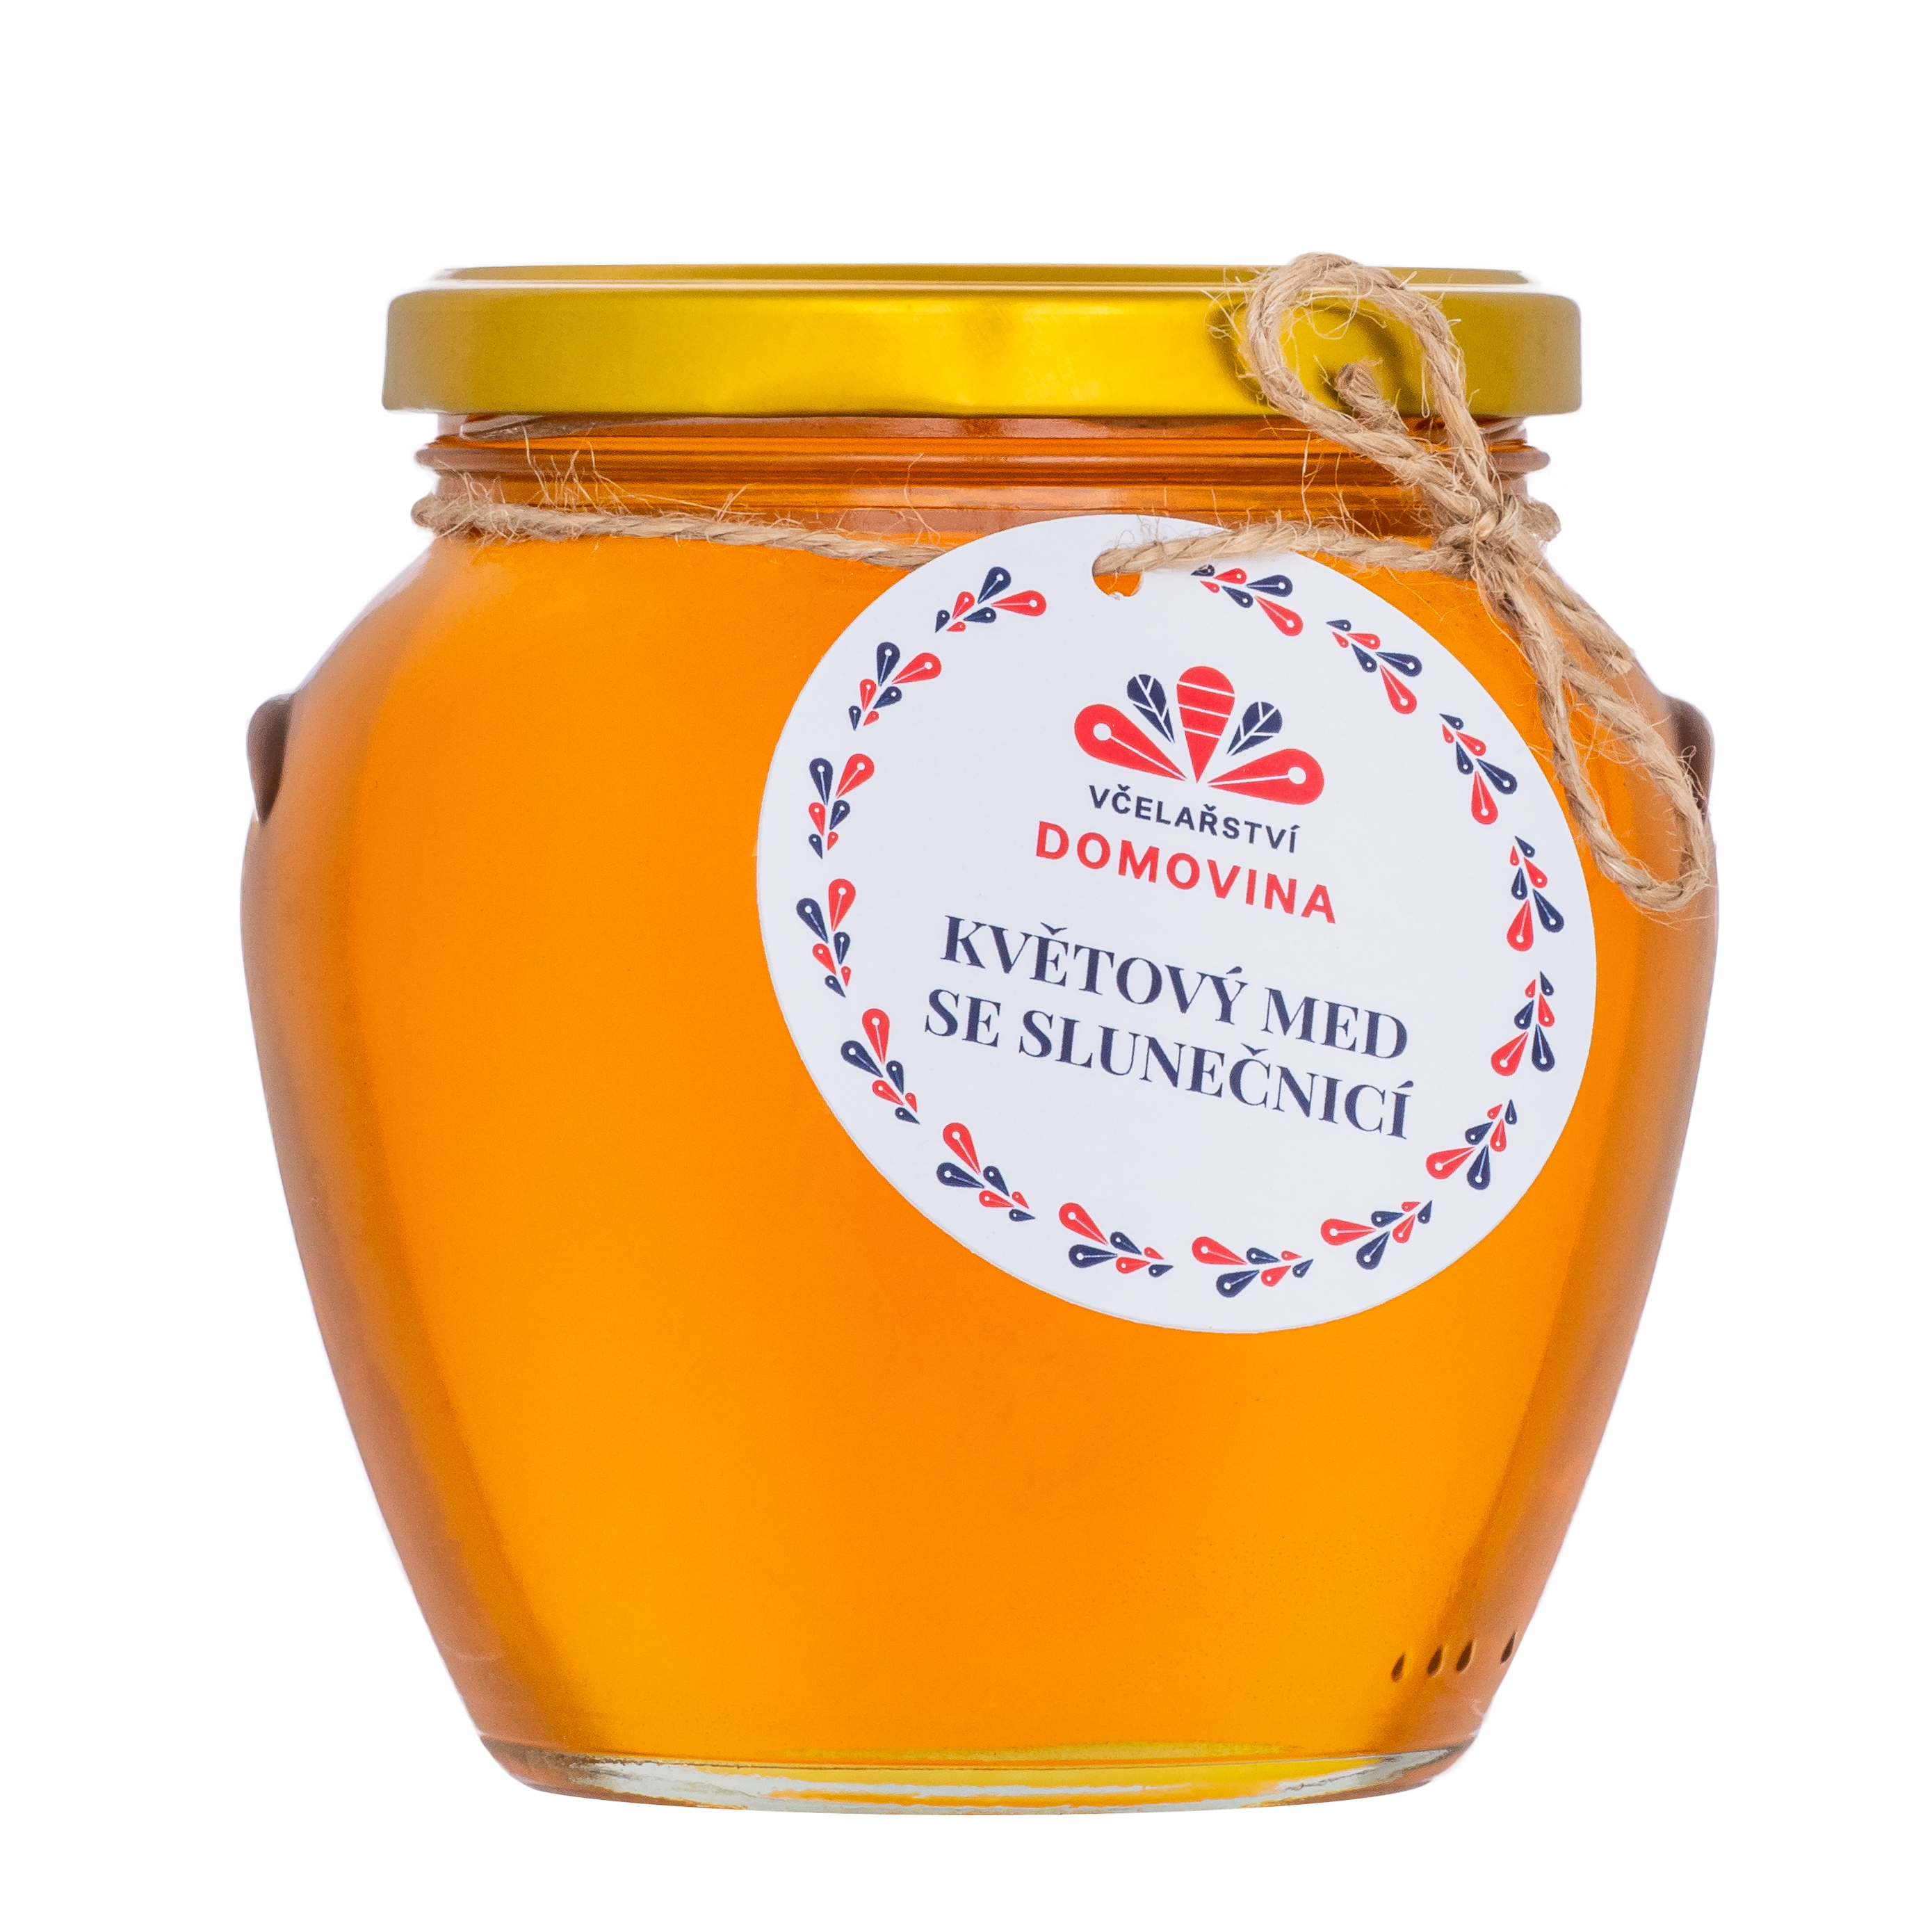 Květový med se slunečnicí, hmotnost 750 g